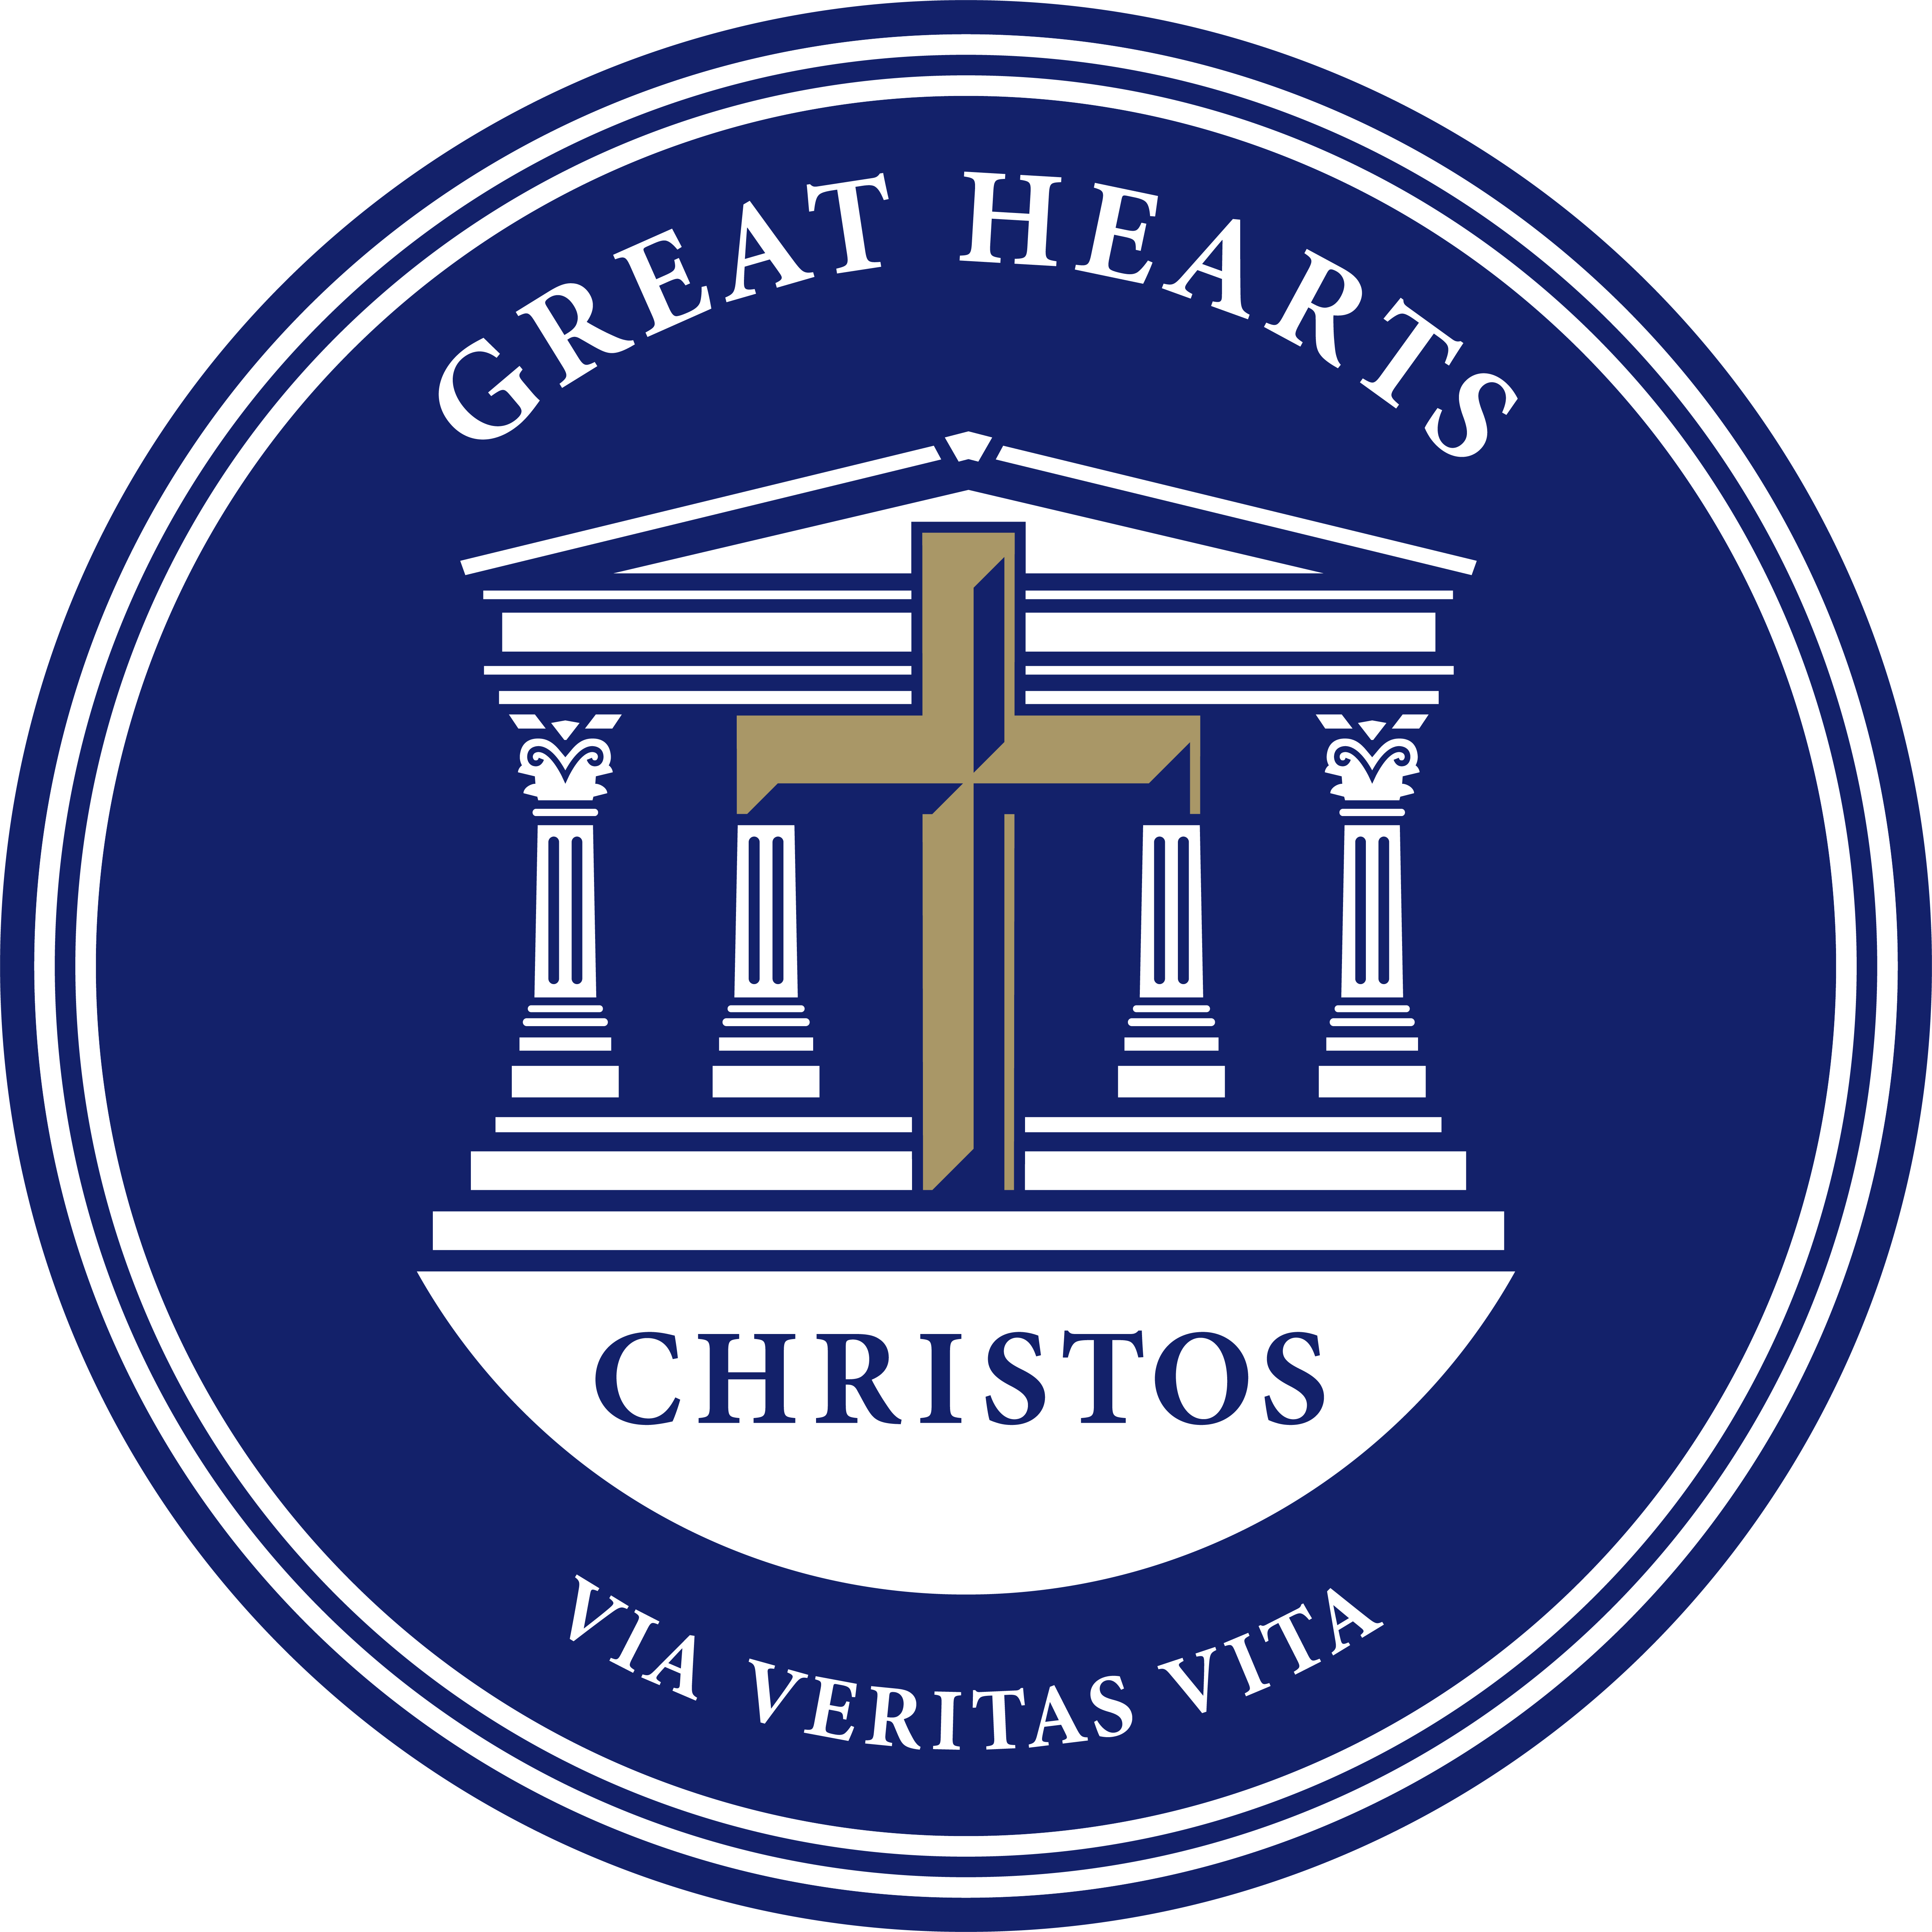 Great Hearts Christos Phoenix School Crest